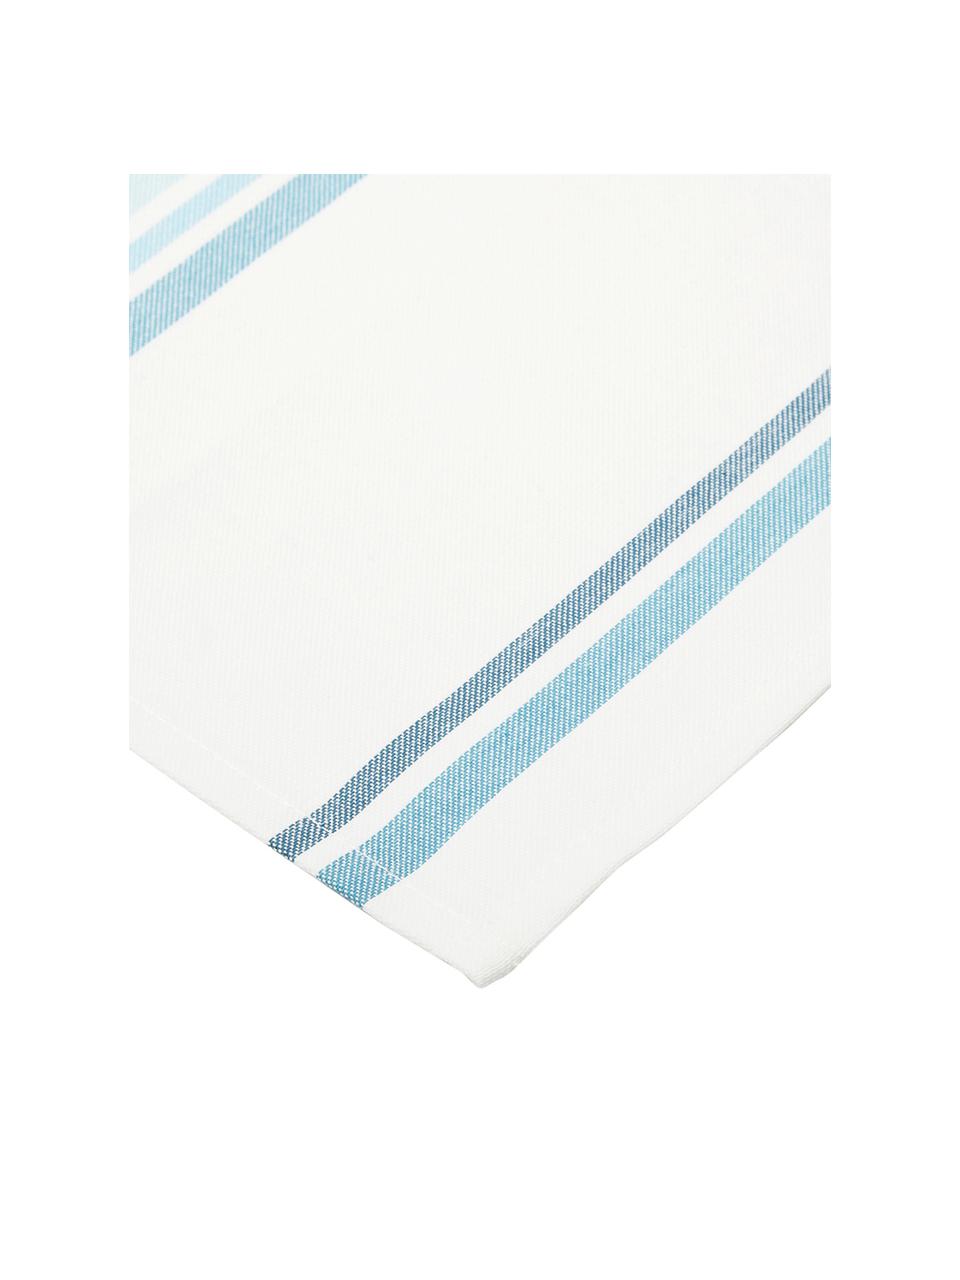 Tischsets Katie, 2 Stück, Baumwolle, Weiß, Blau, 40 x 50 cm